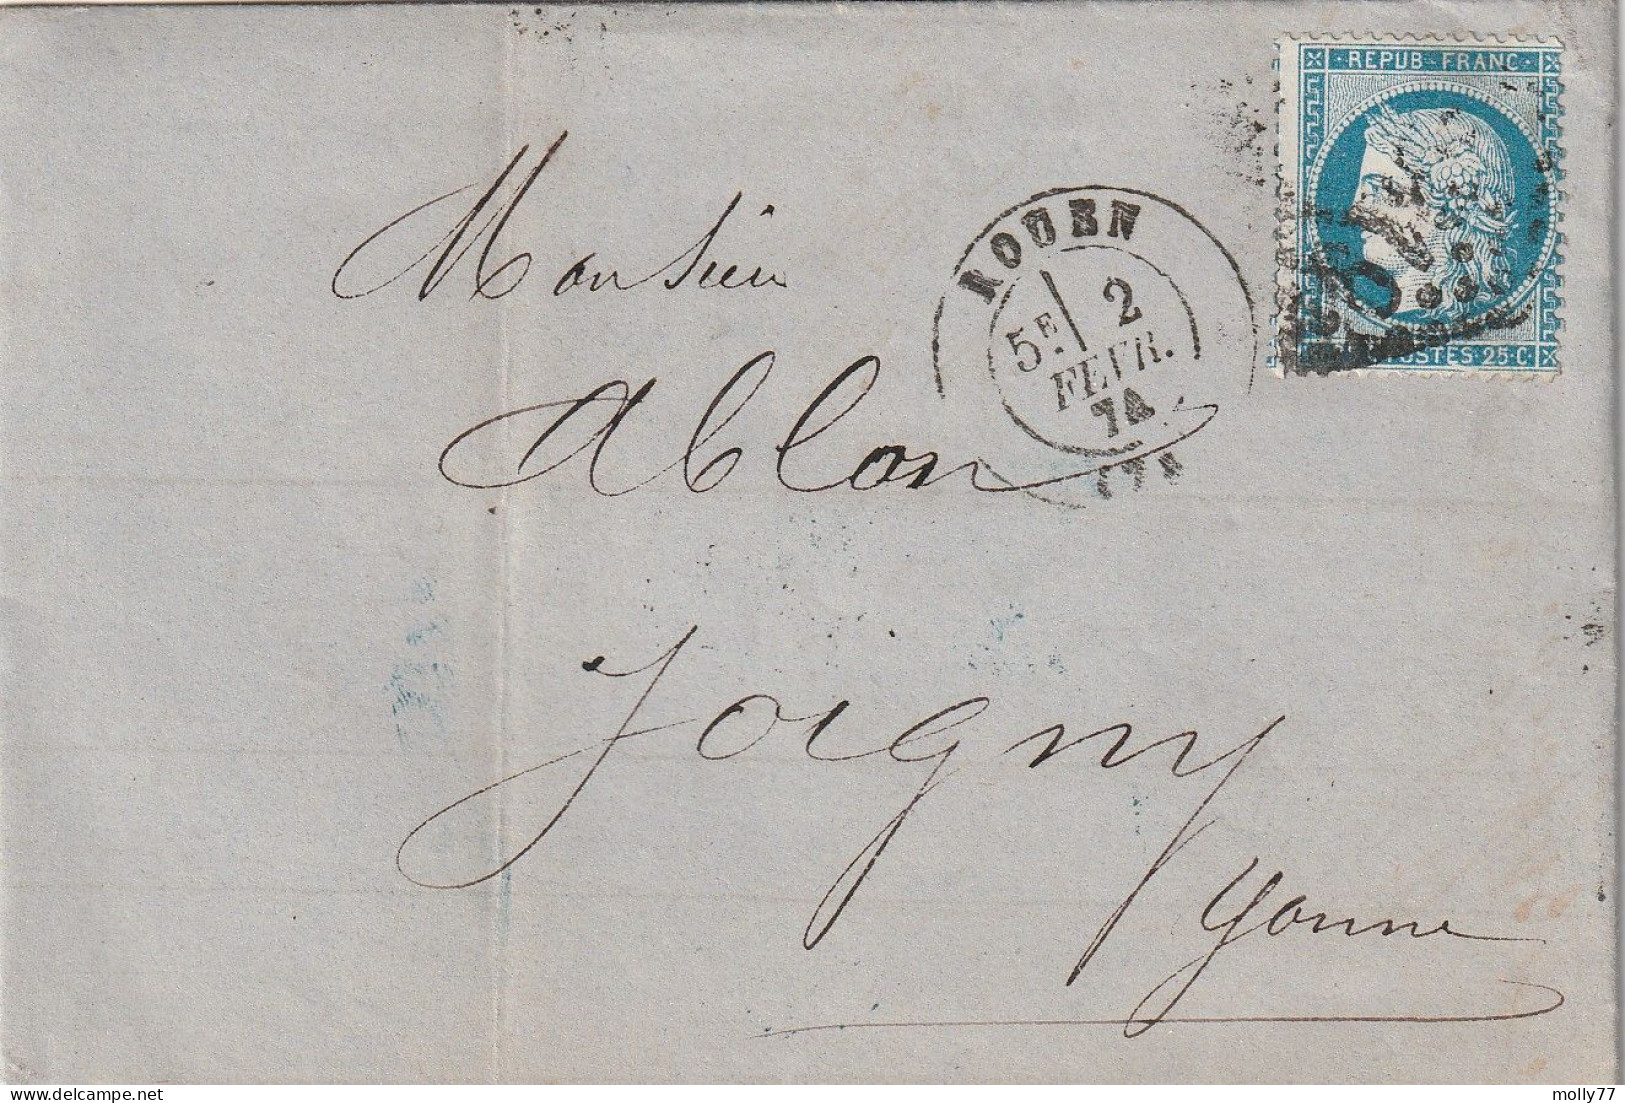 Lettre De Rouen à Joigny LAC - 1849-1876: Classic Period